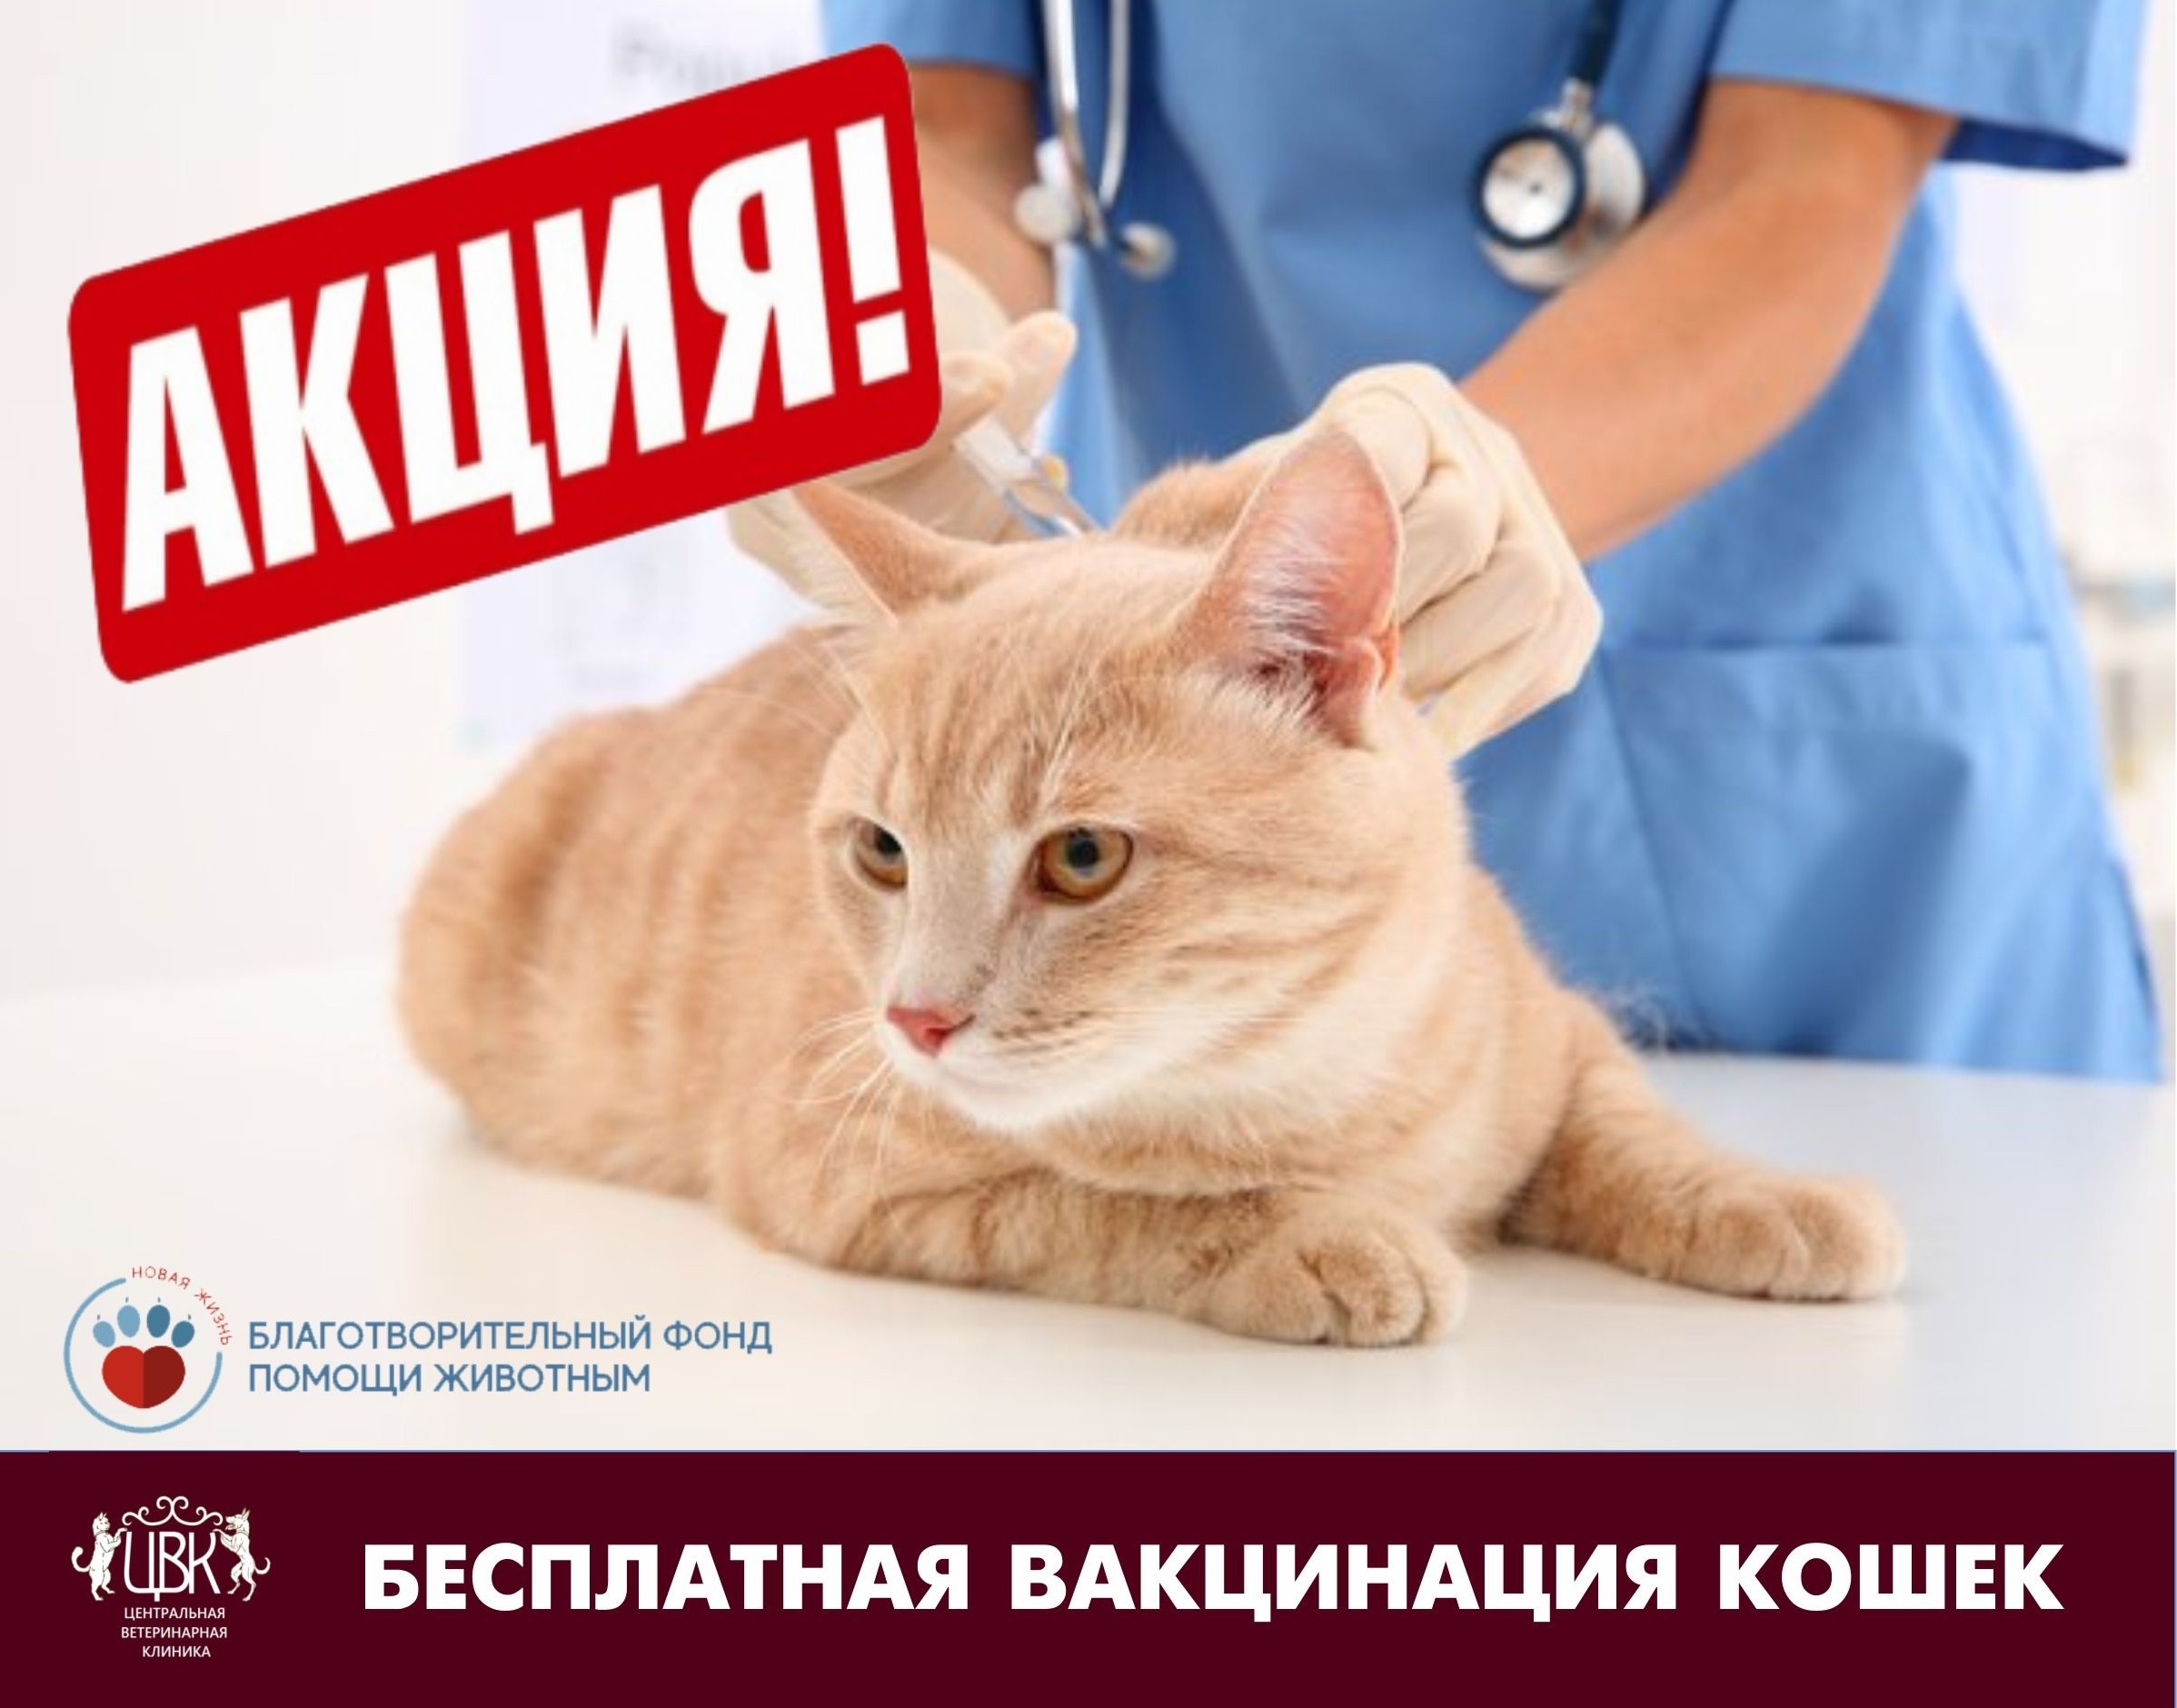 Бесплатные прививки для кошек в москве. Вакцинация кошек. Прививки для кошек. Вакцинация кошки клиника. Вакцины для кошек акция.